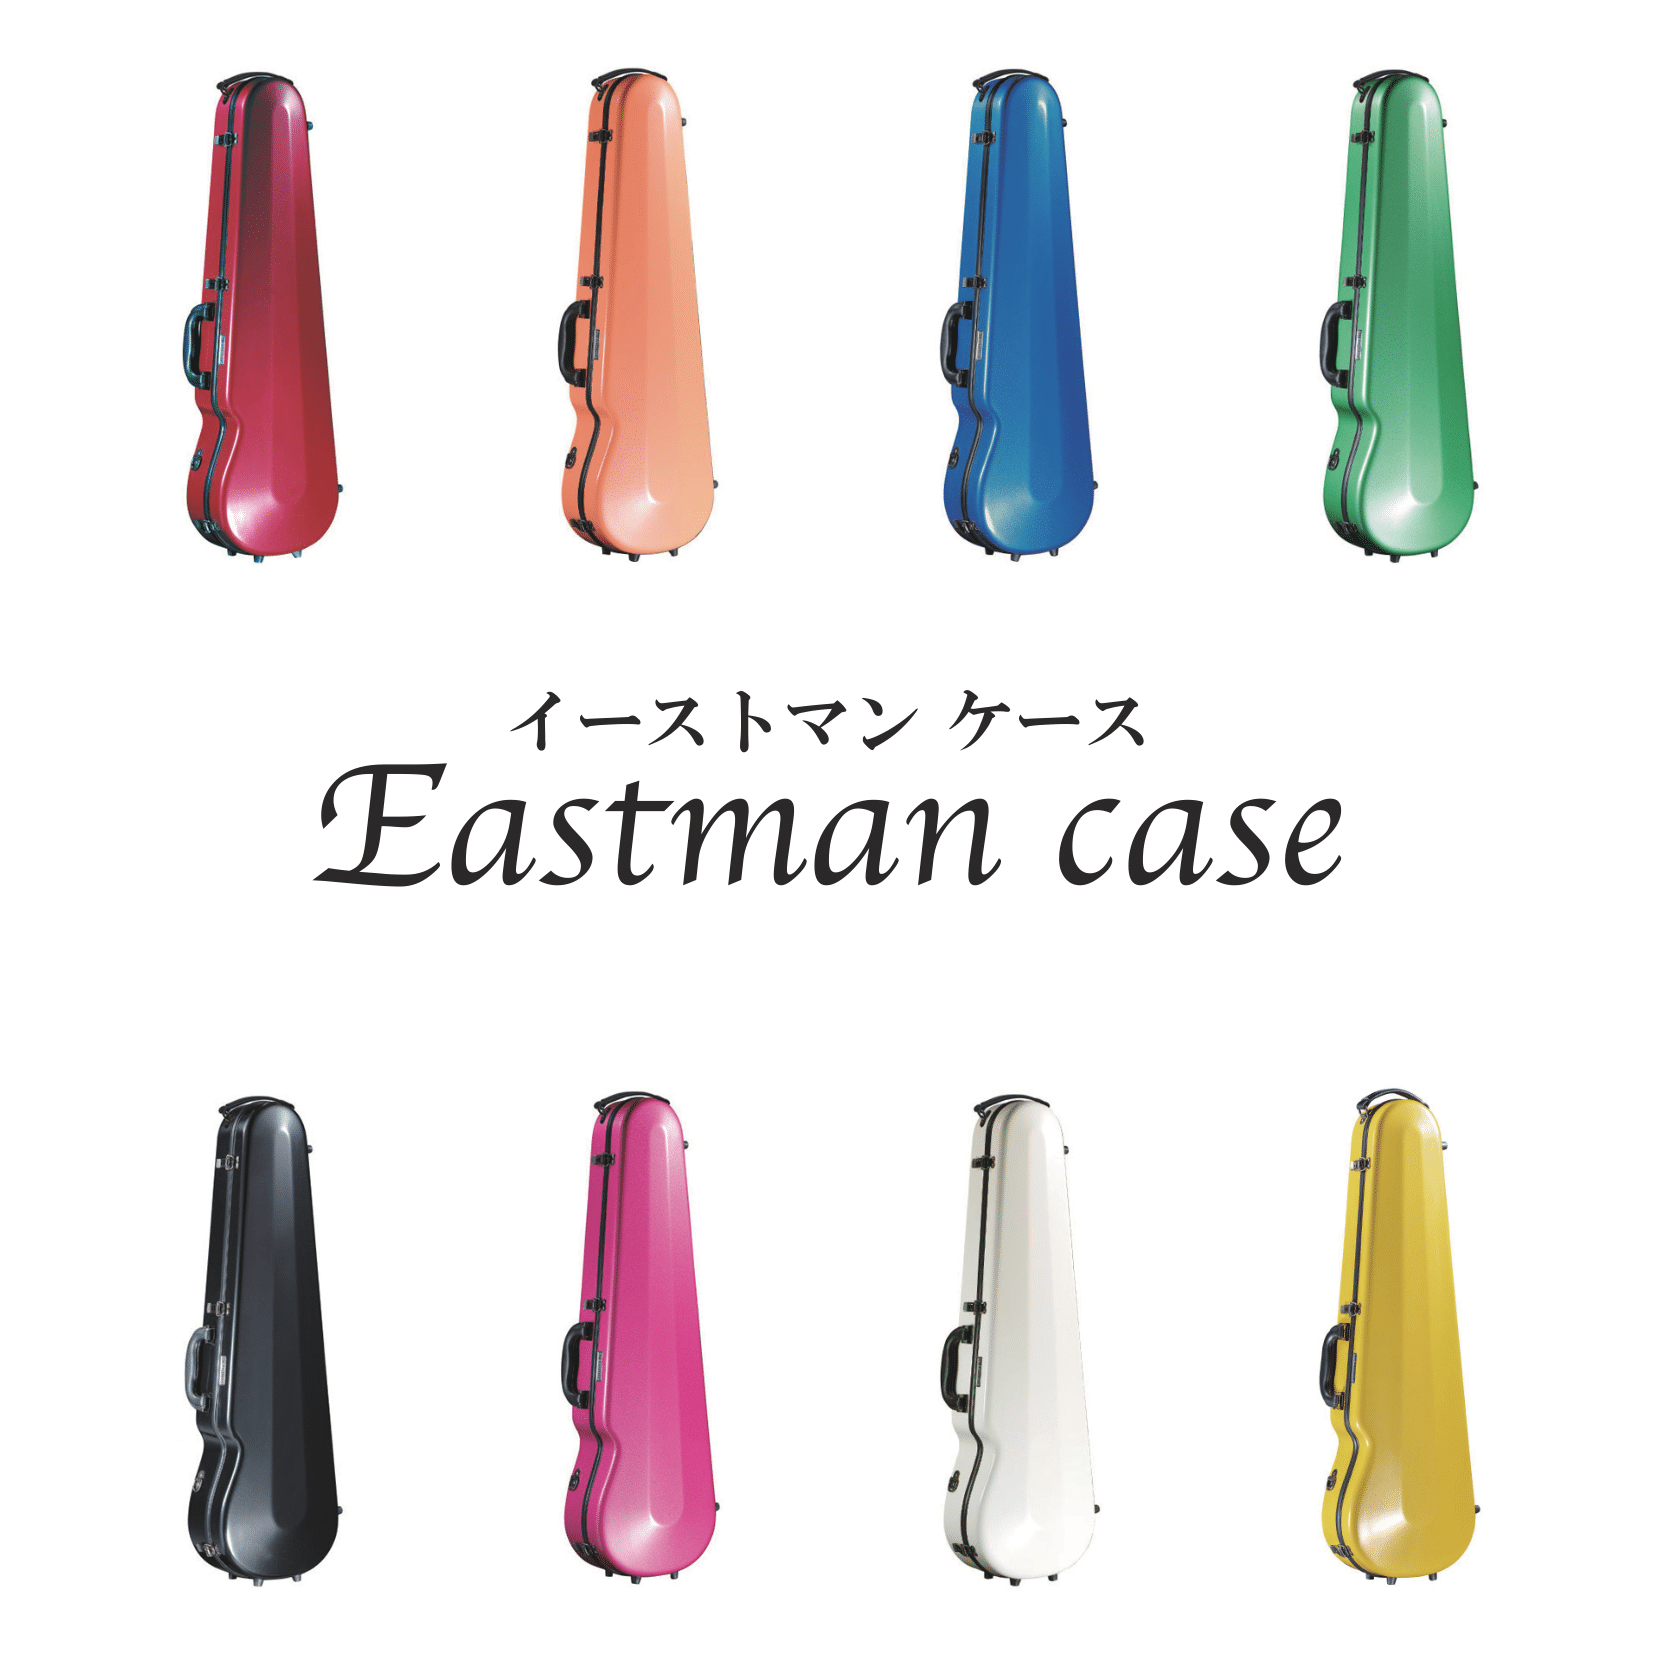 Eastman case